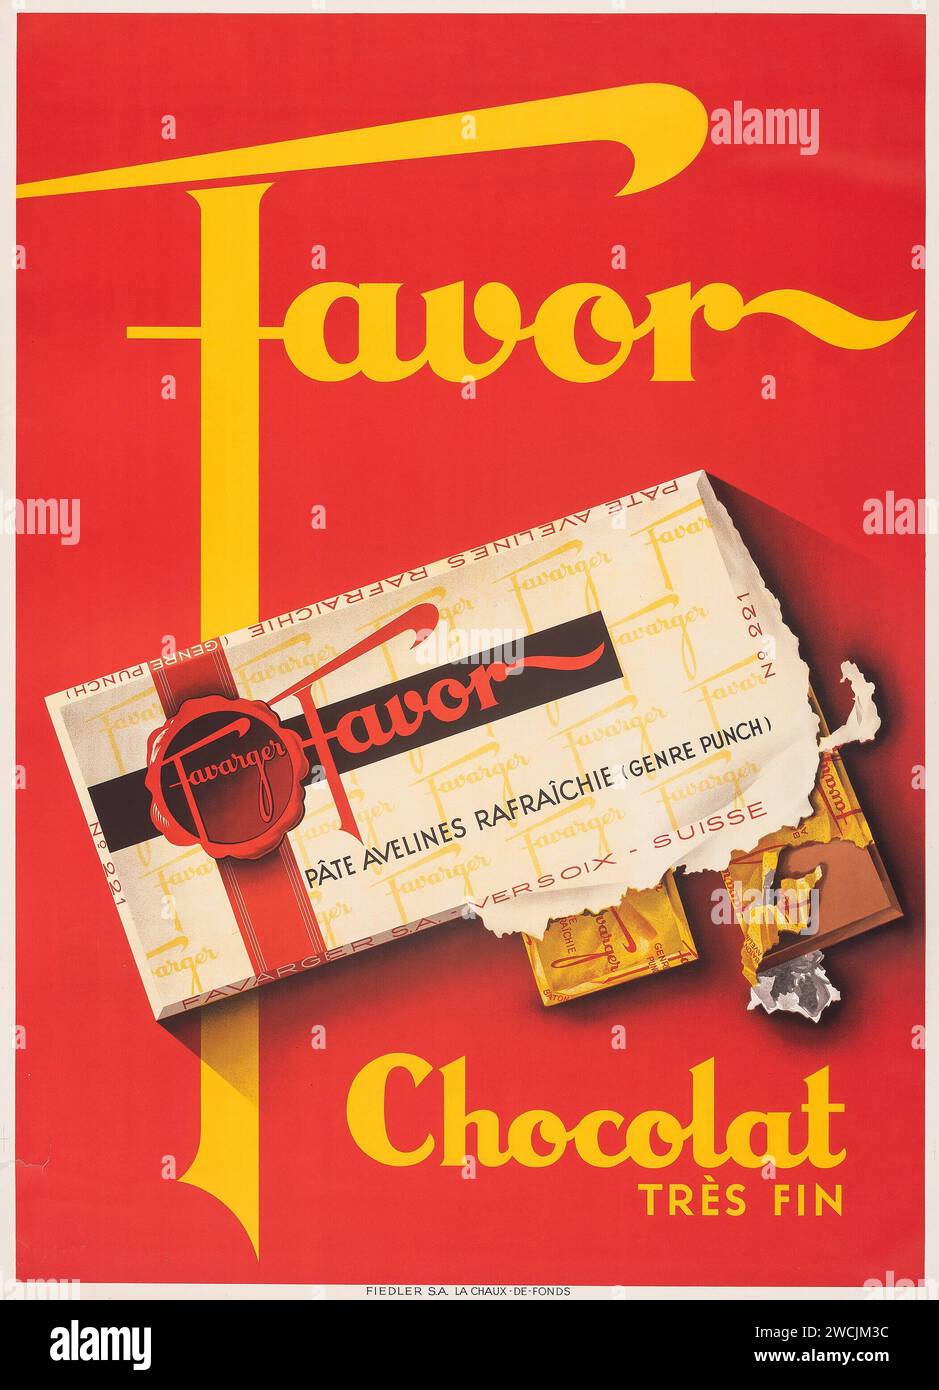 Favor chocolat (c. 1930s) affiche publicitaire française vintage - artiste inconnu Banque D'Images